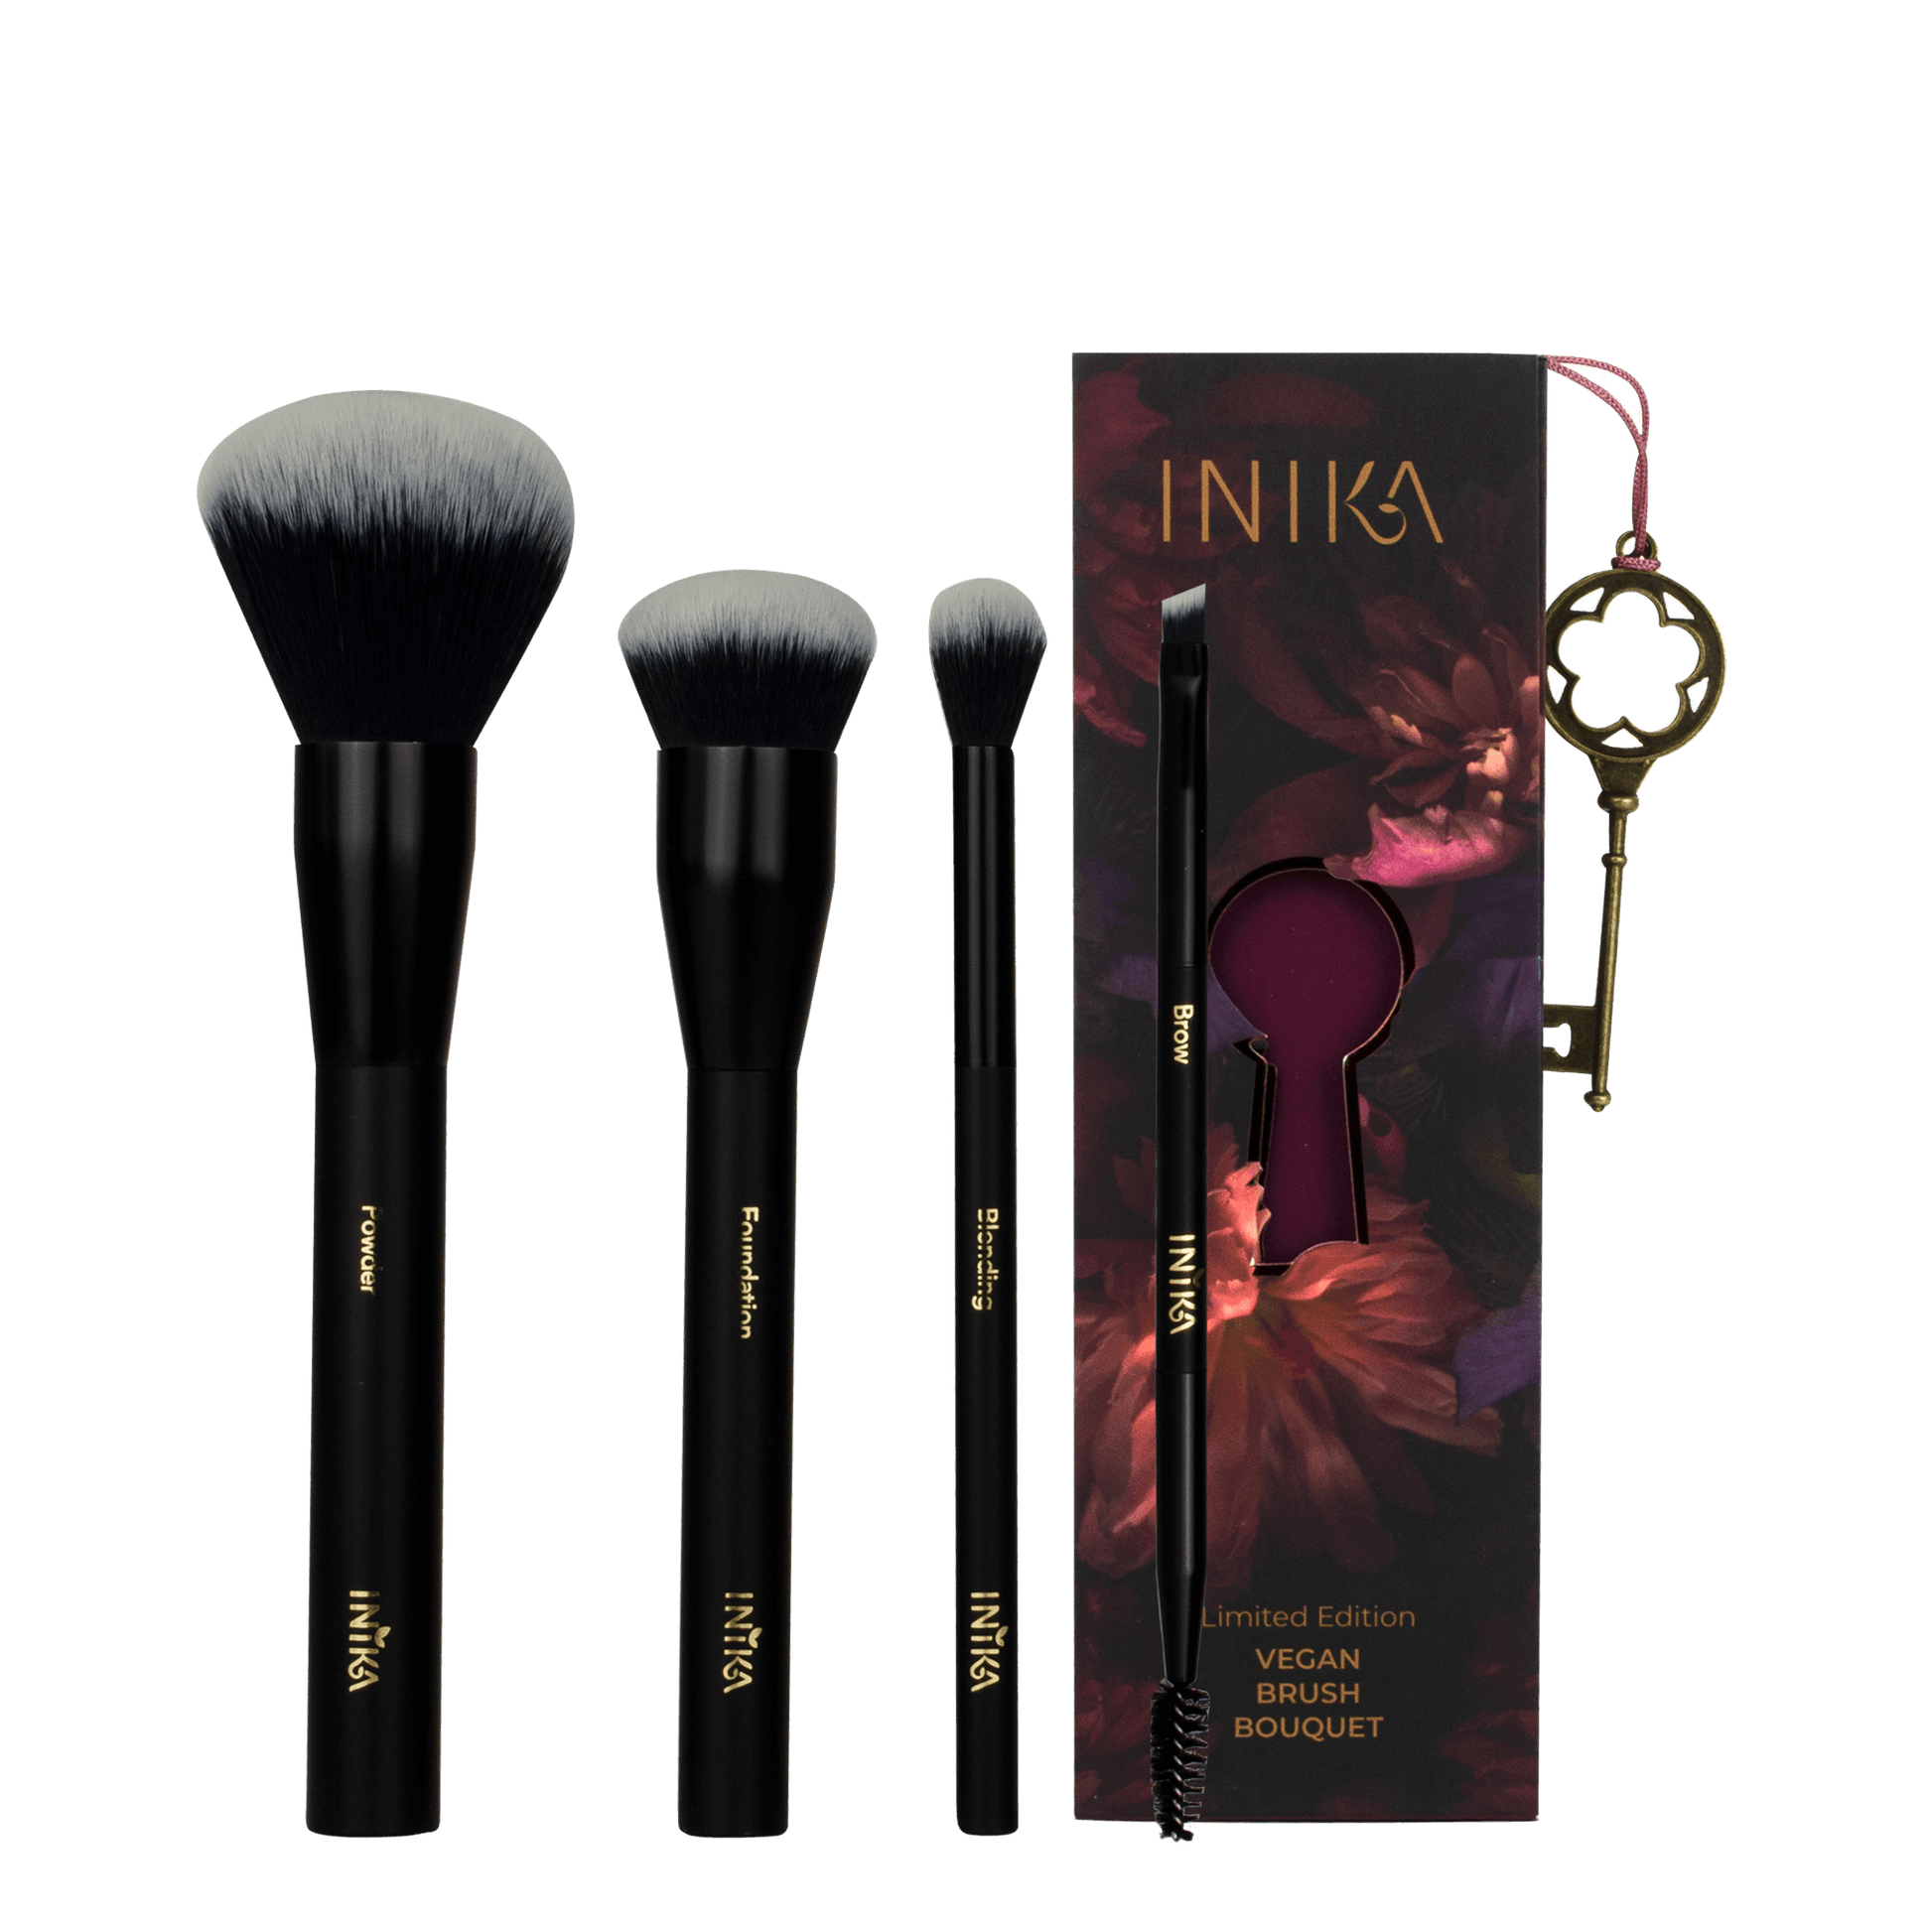 Limited Edition Vegan Brush Bouquet | INIKA Organic